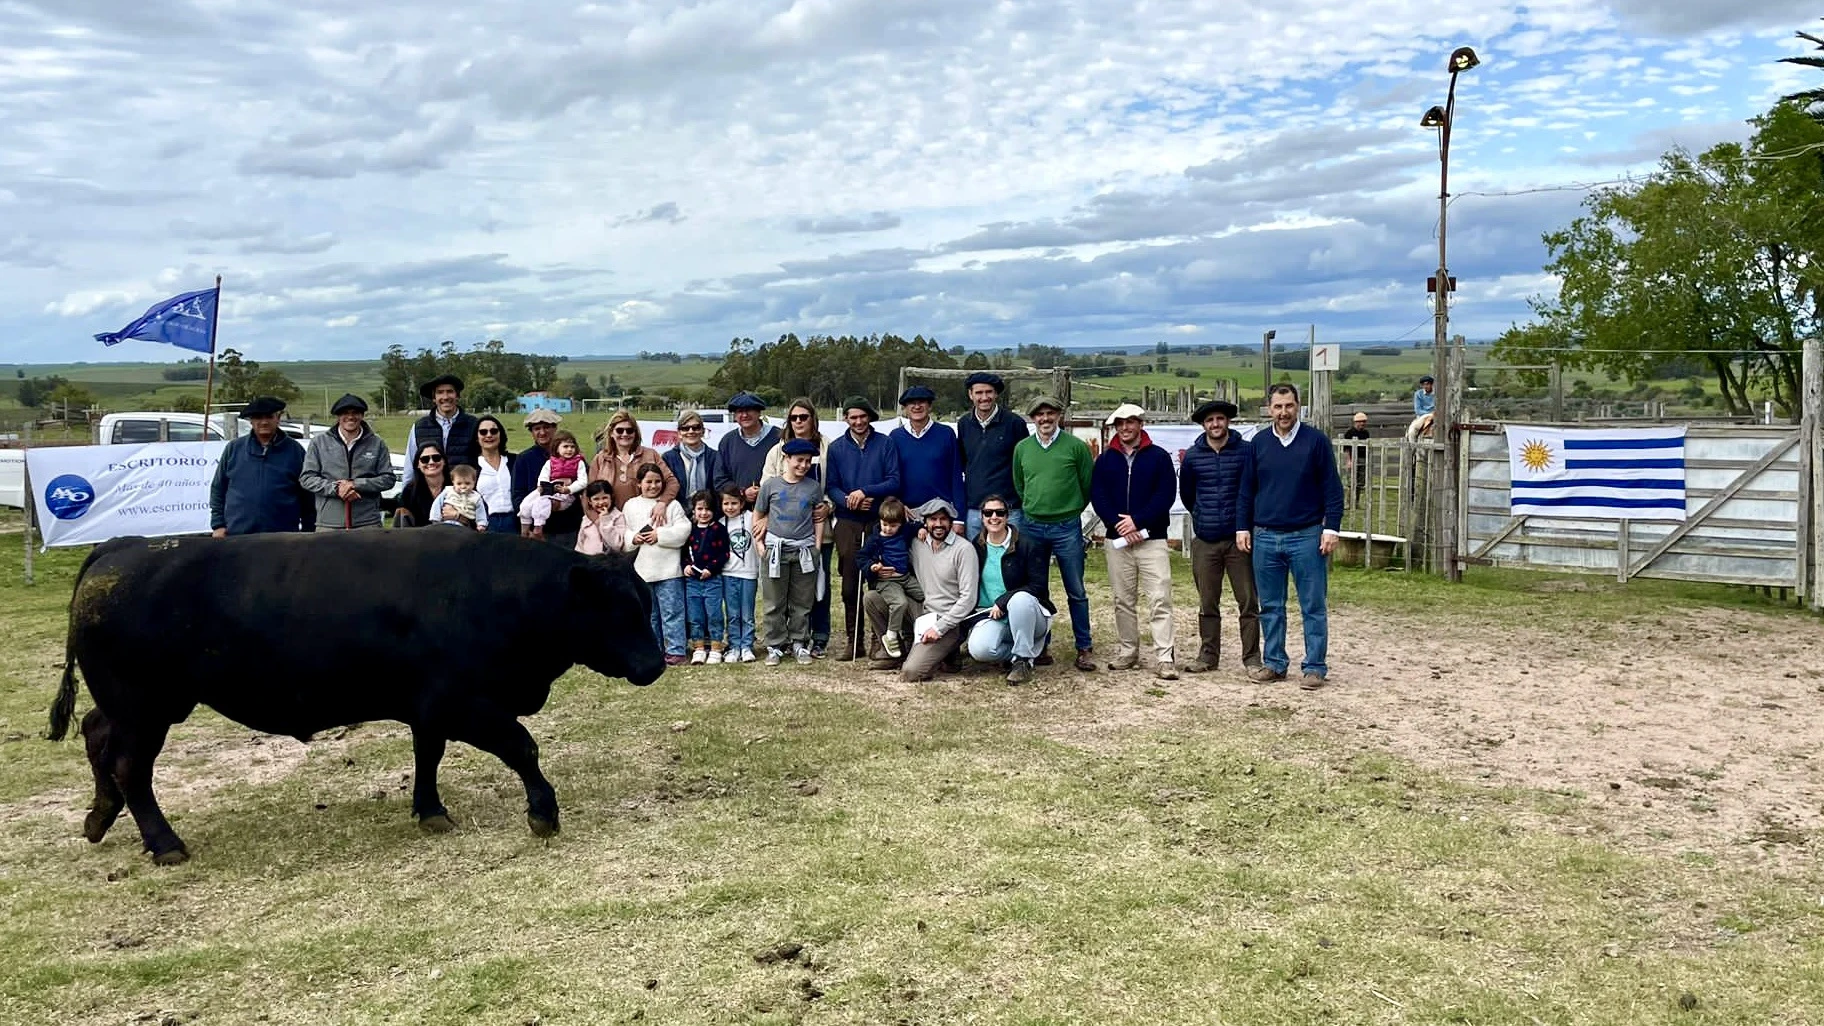 (Español) Cabaña San Gerardo: remate de toros Angus un éxito con demanda sostenida.